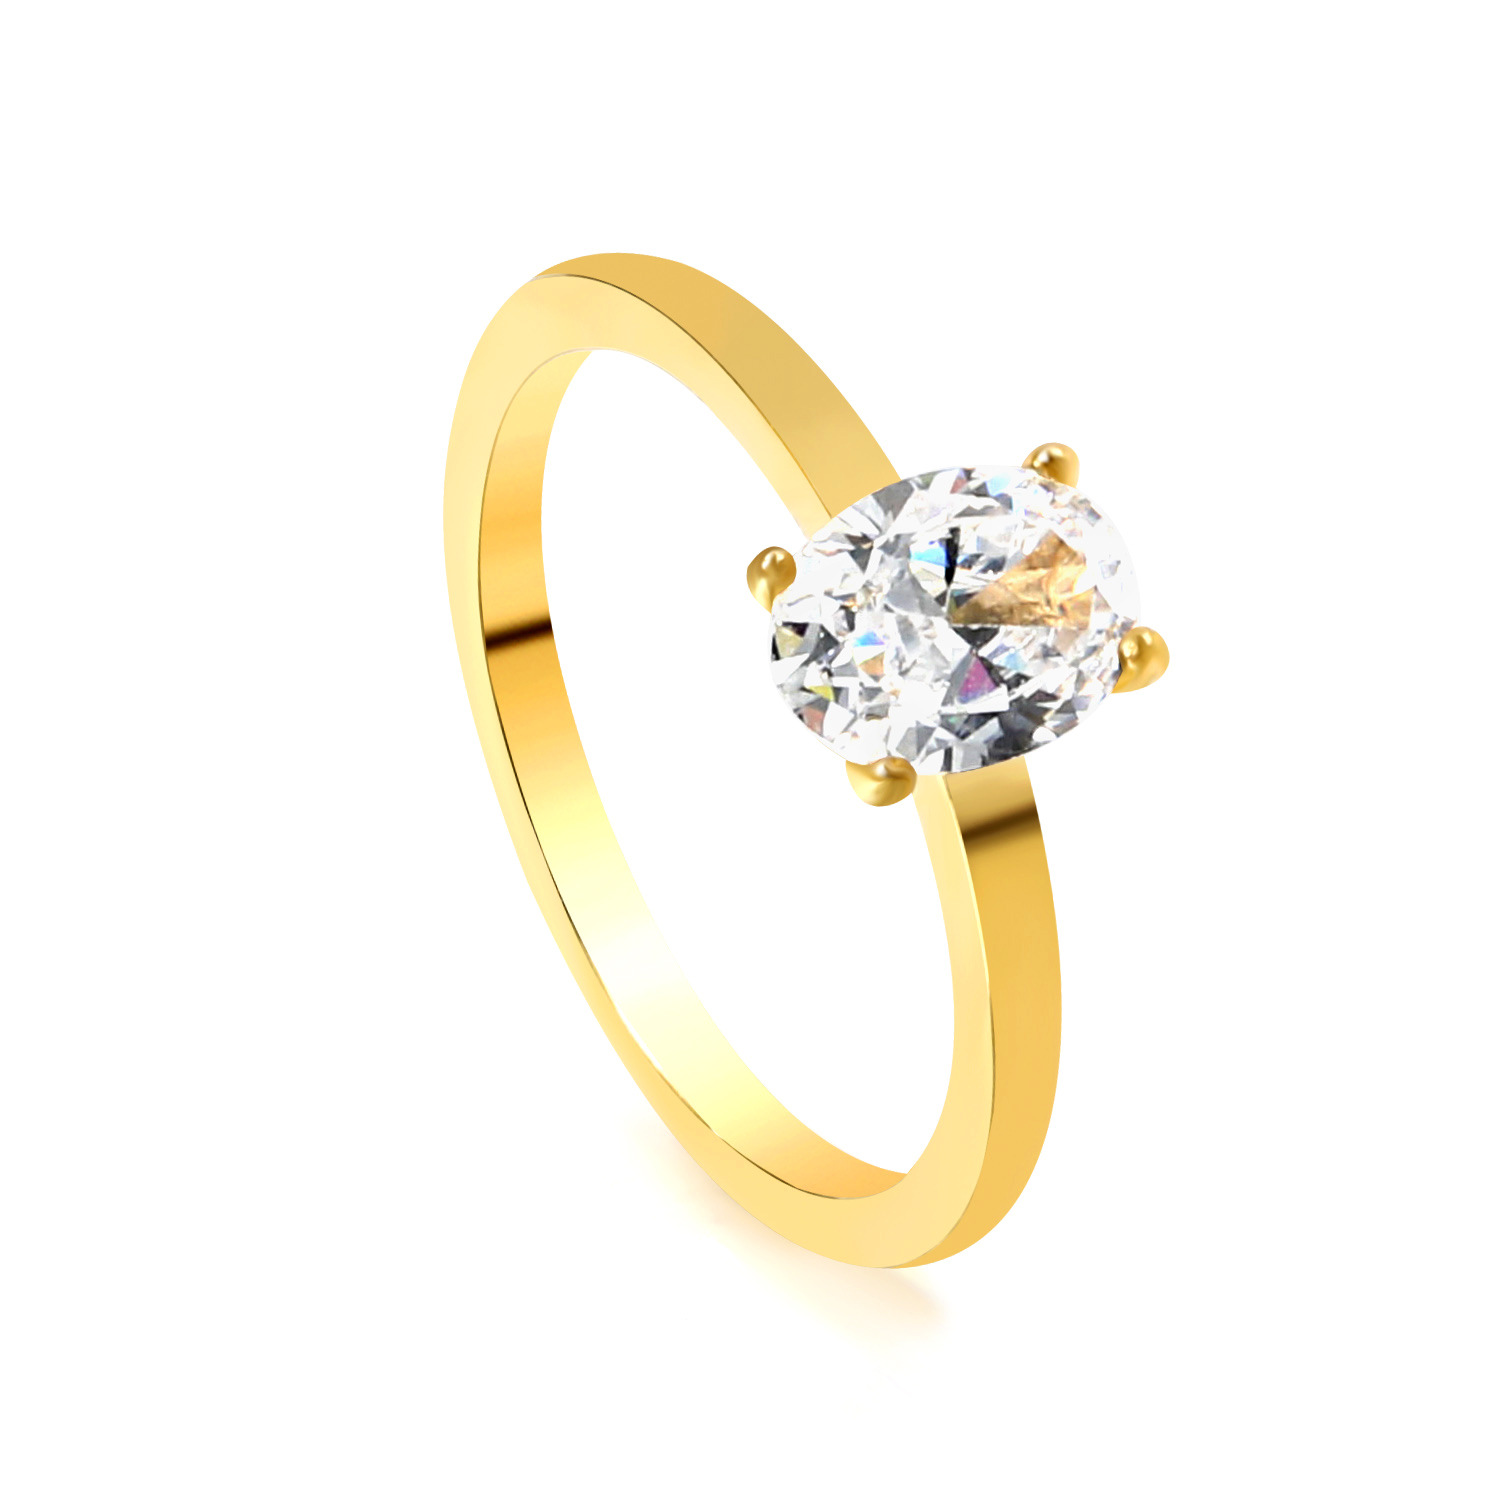 6:Gold and white diamond ring RI145306-9G